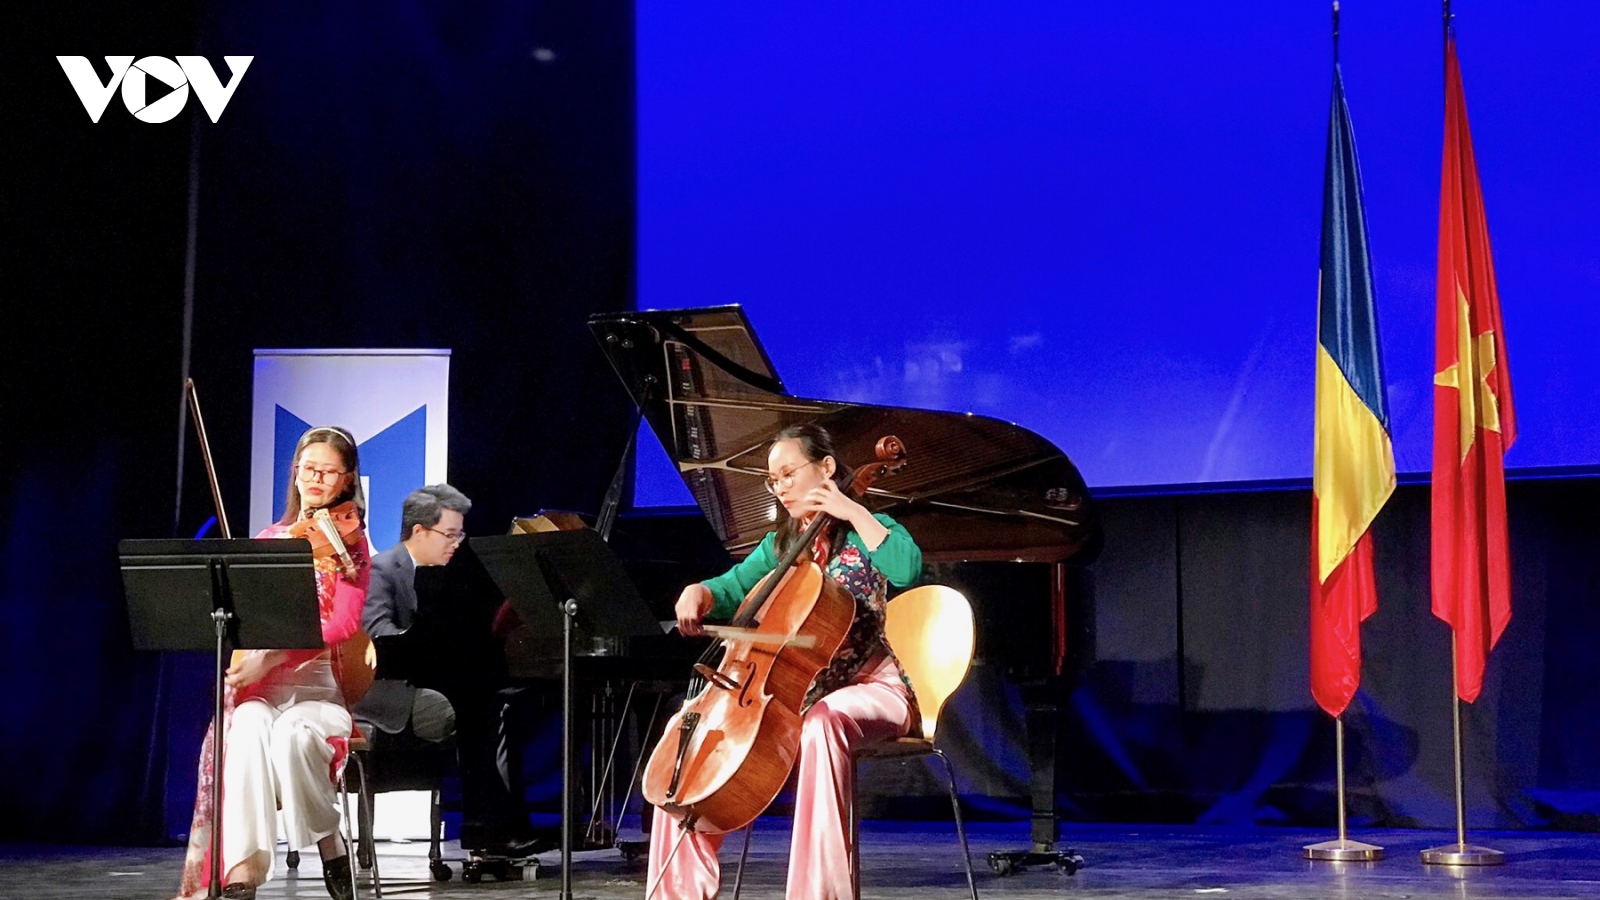 Đêm nhạc “Giai điệu hữu nghị” - cầu nối văn hóa, giáo dục giữa Việt Nam và Romania